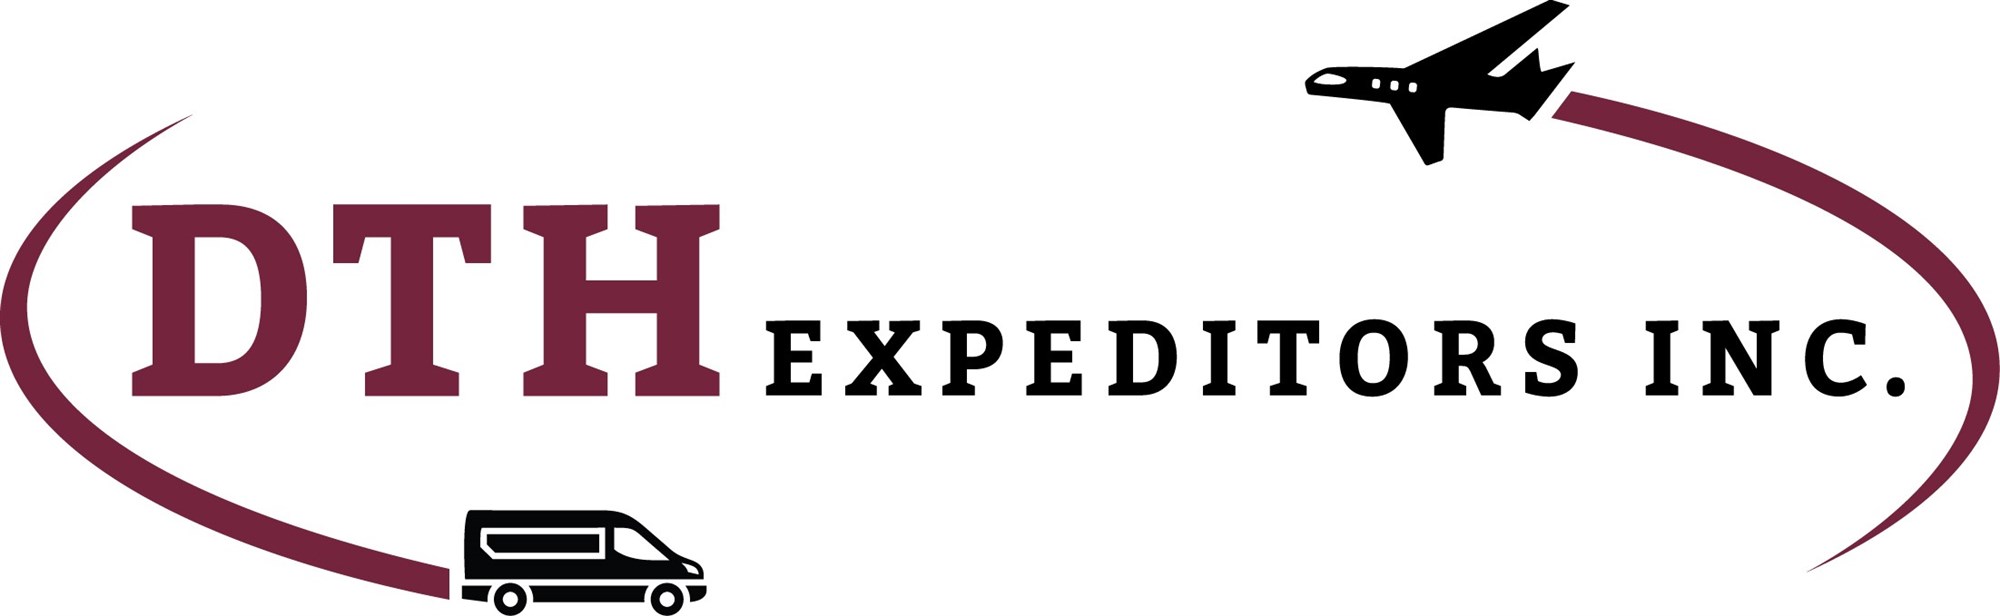 DTH Expeditors - https://avgroup.net